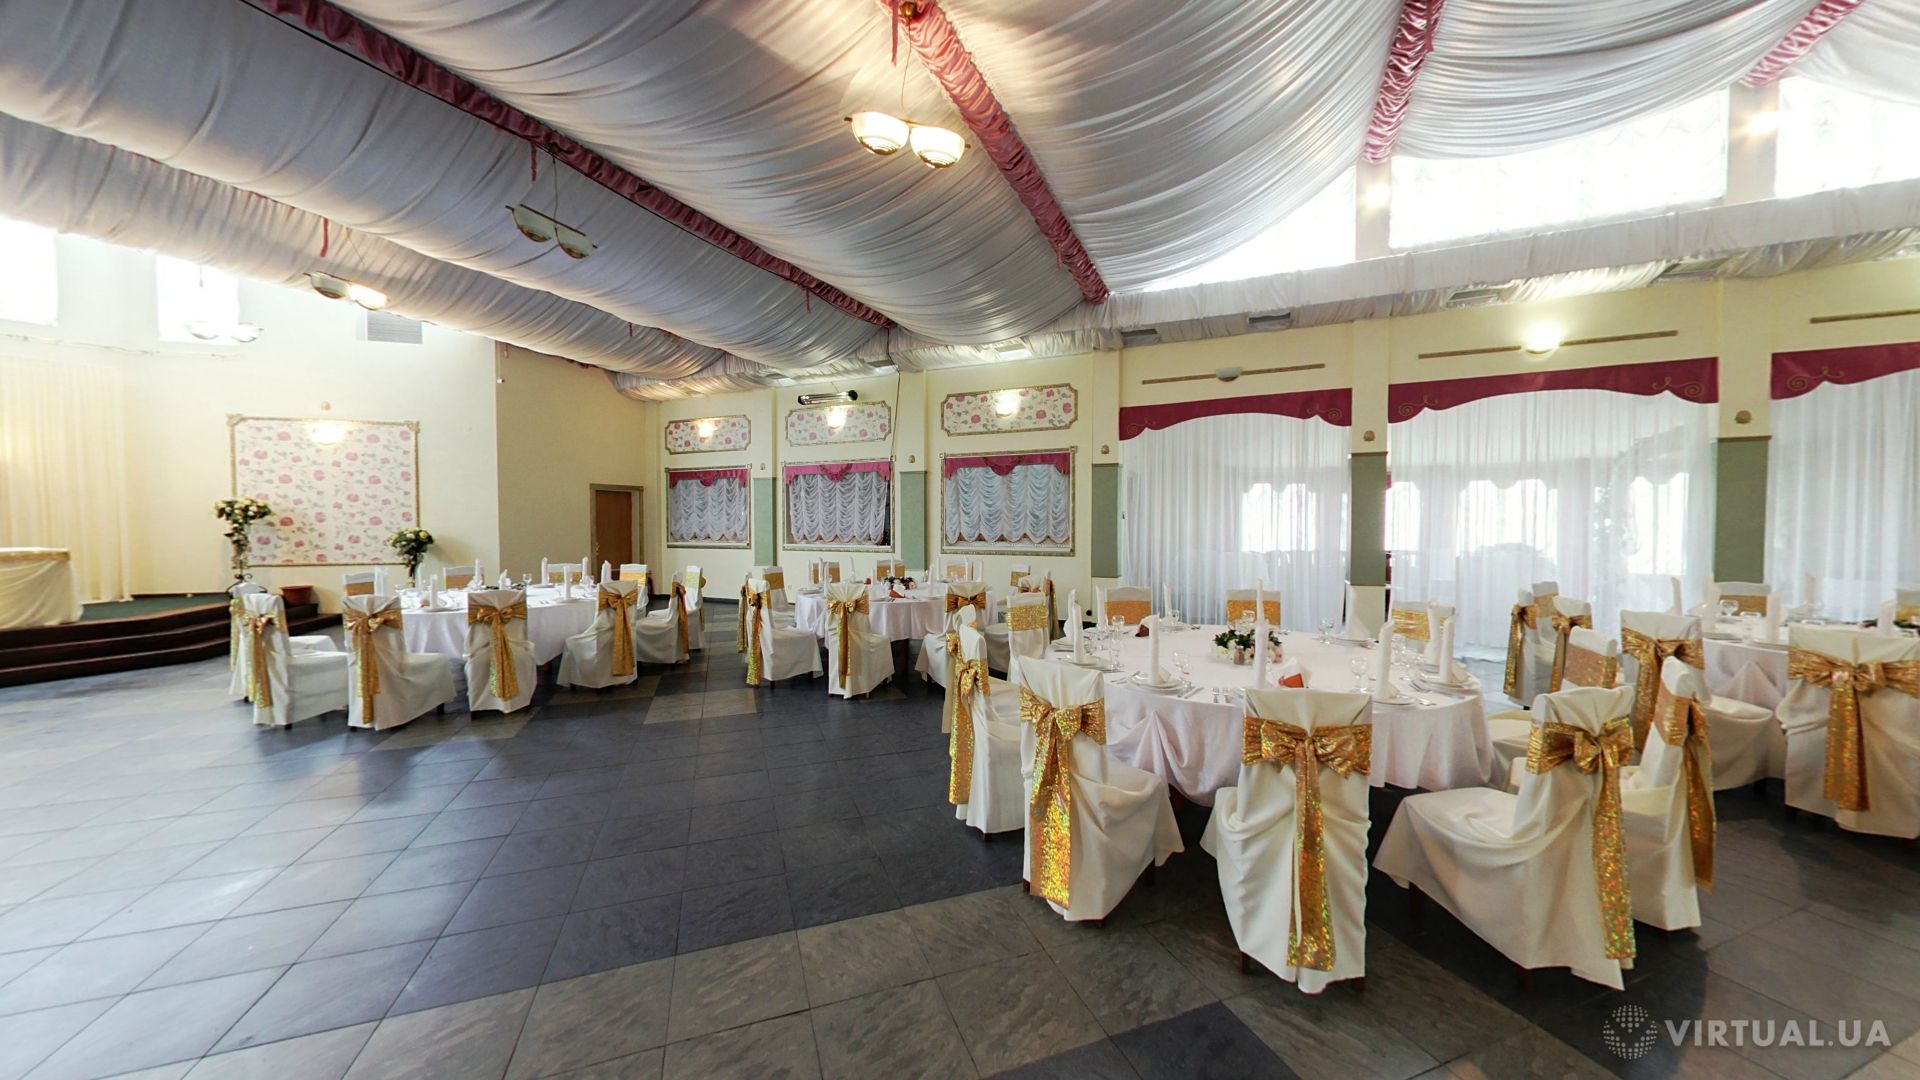 Restaurant «Ozernyi Kray», photo